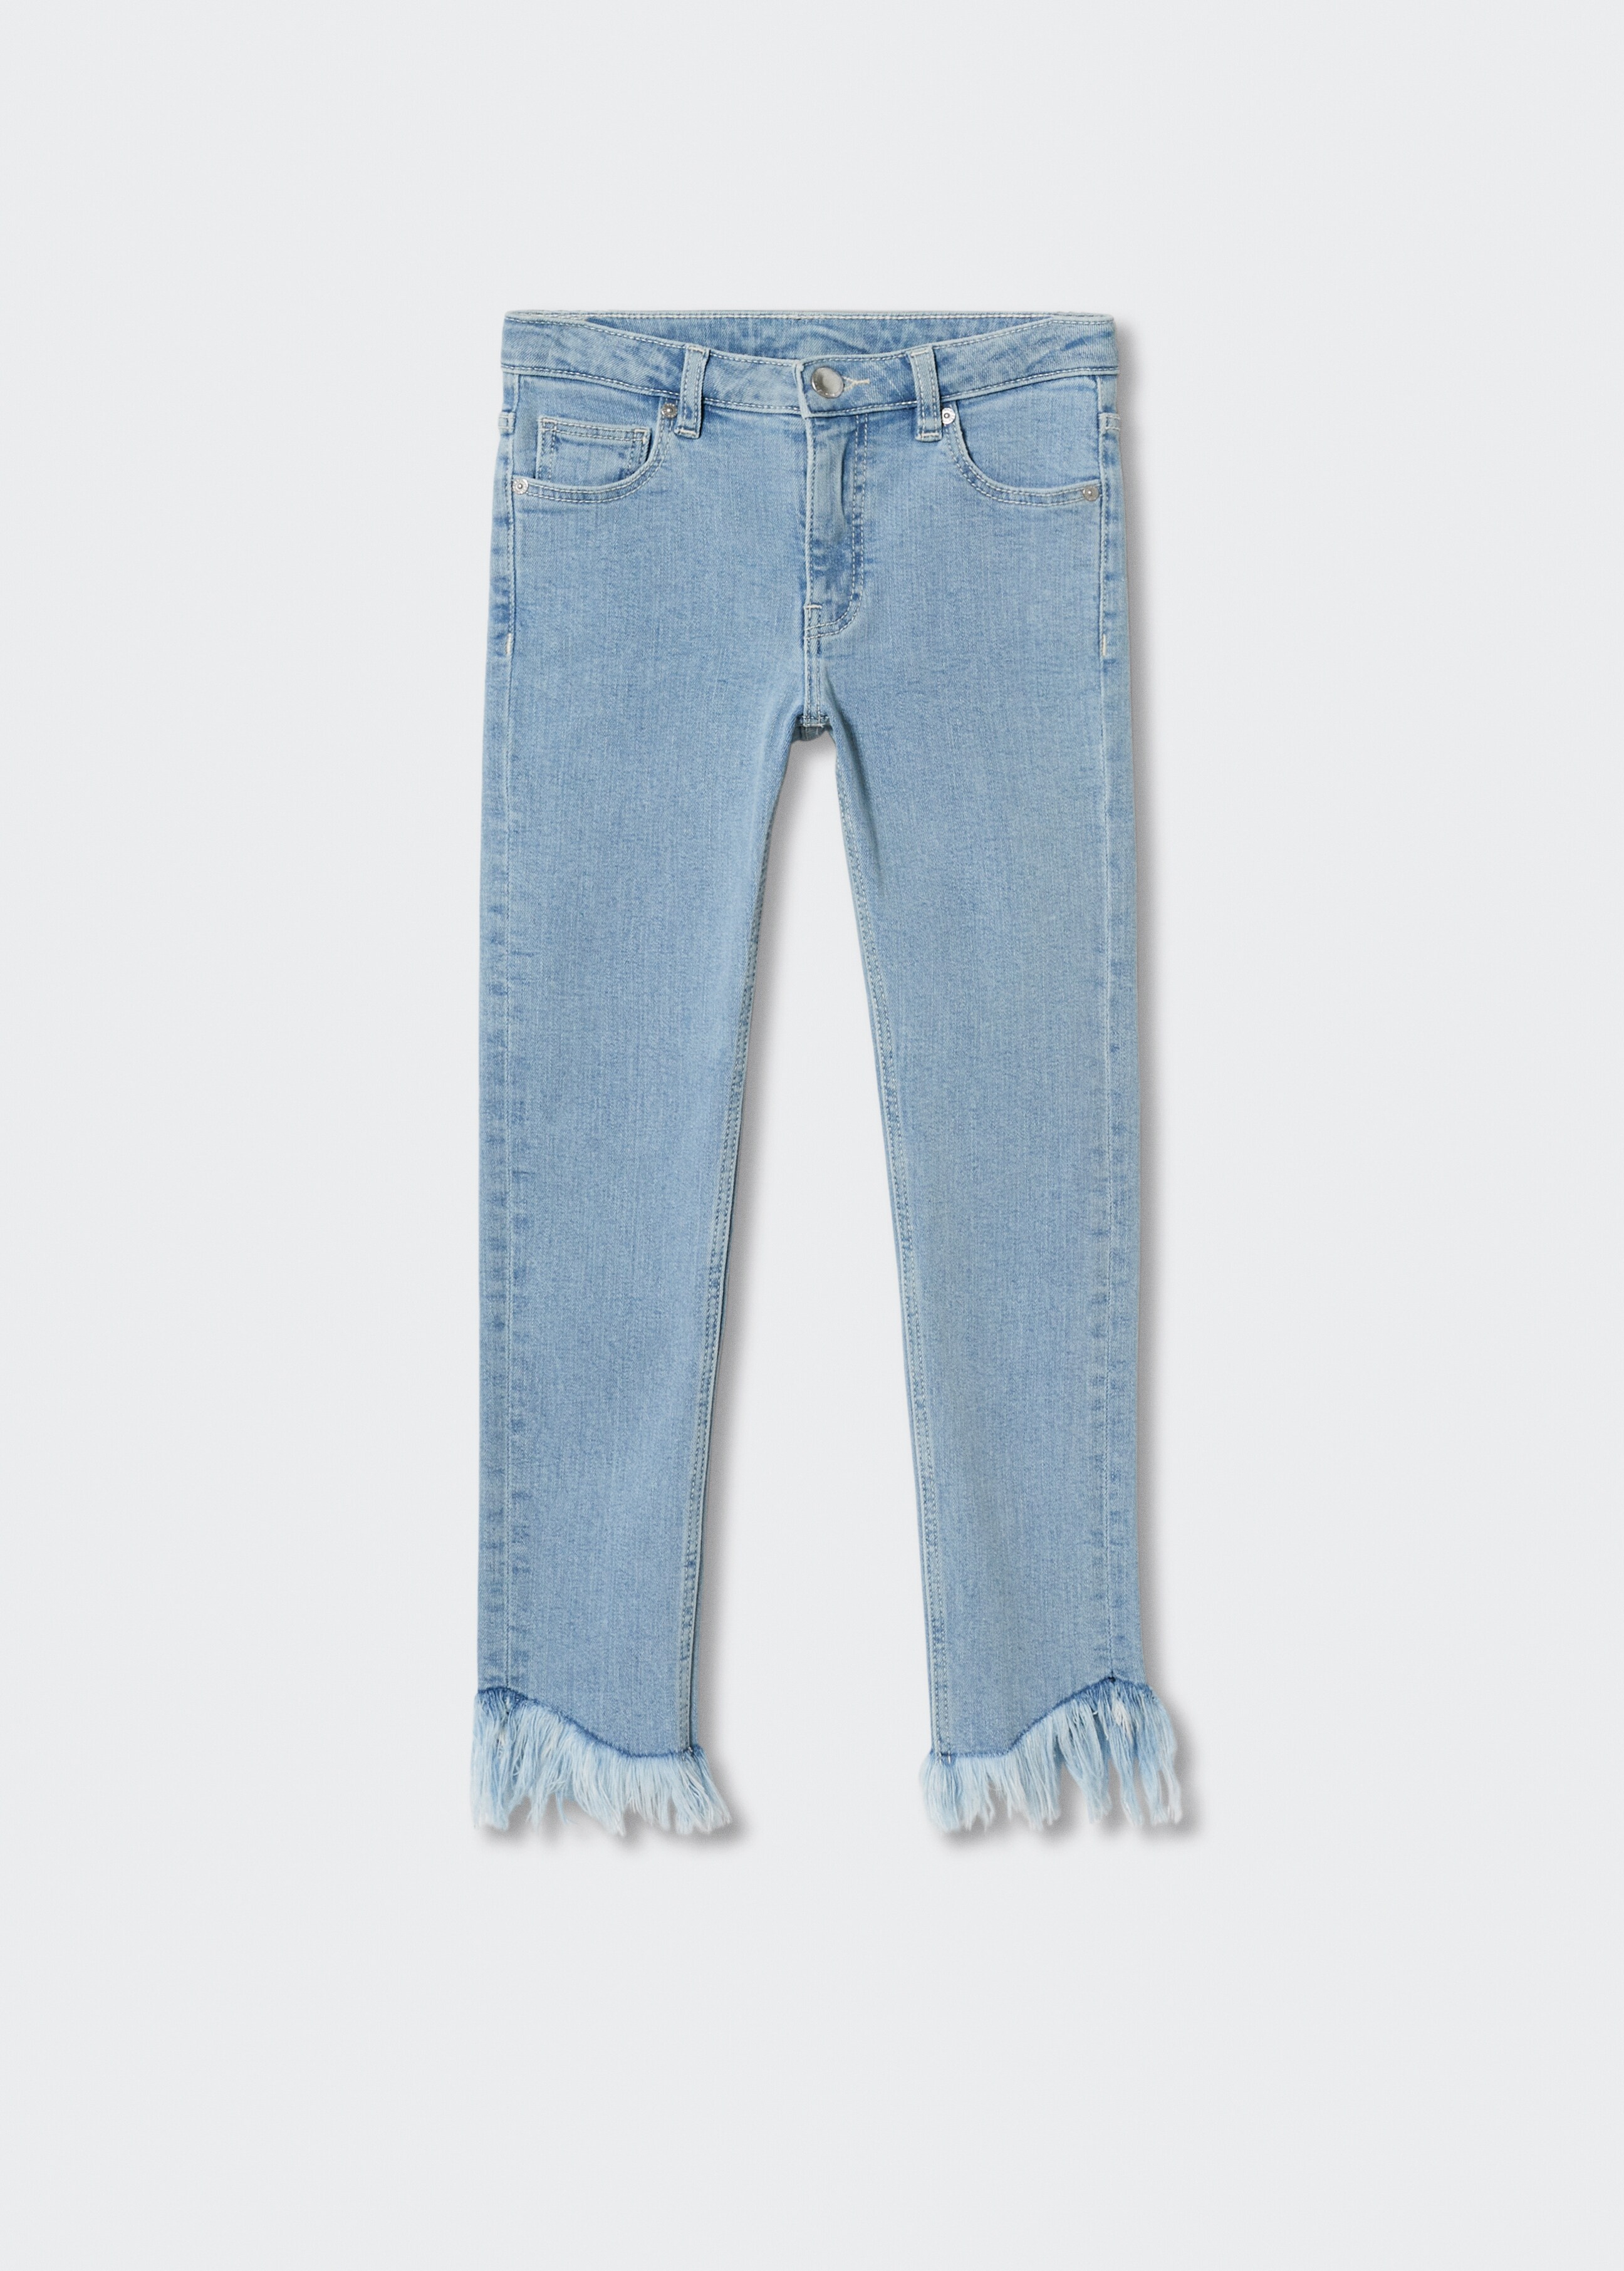 Jeans skinny bajo deshilachado - Artículo sin modelo